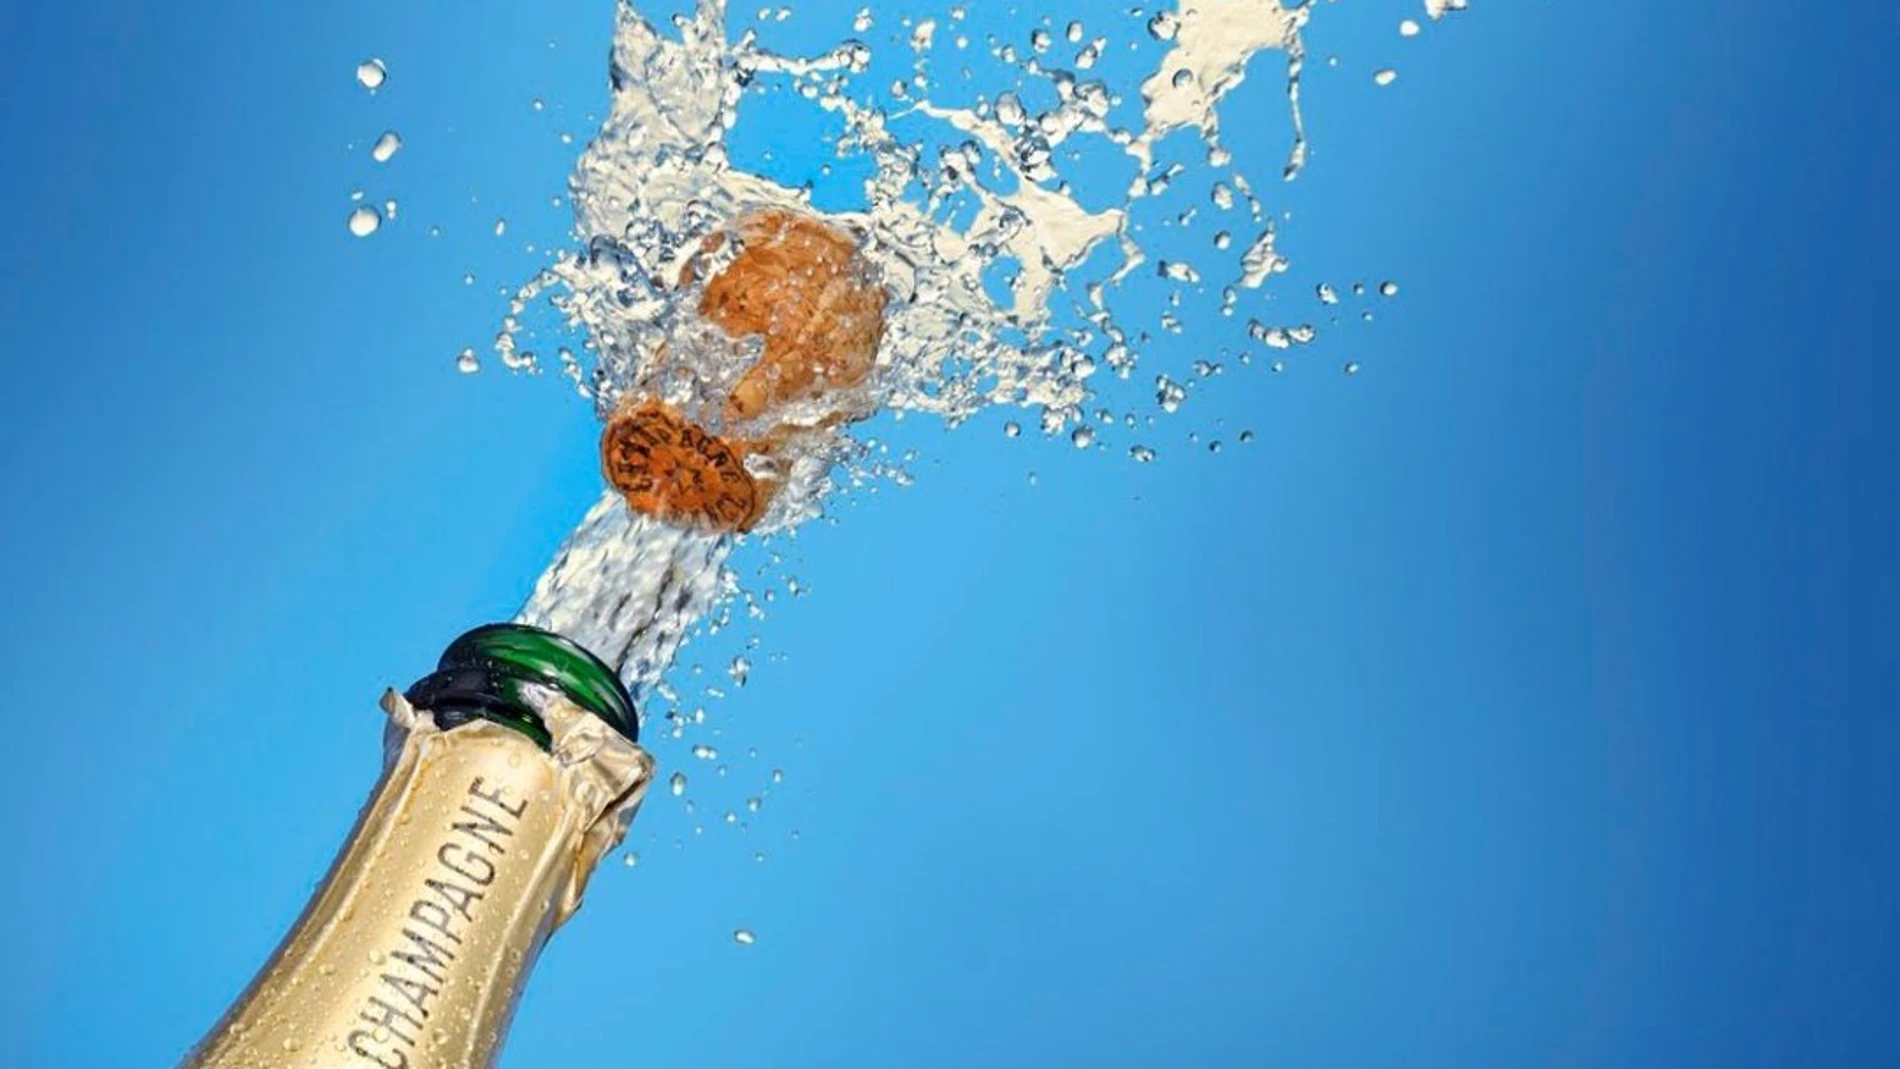 Botella de champán con el corcho saliendo, donde se ven gotas que salen disparadas alrededor del corcho.